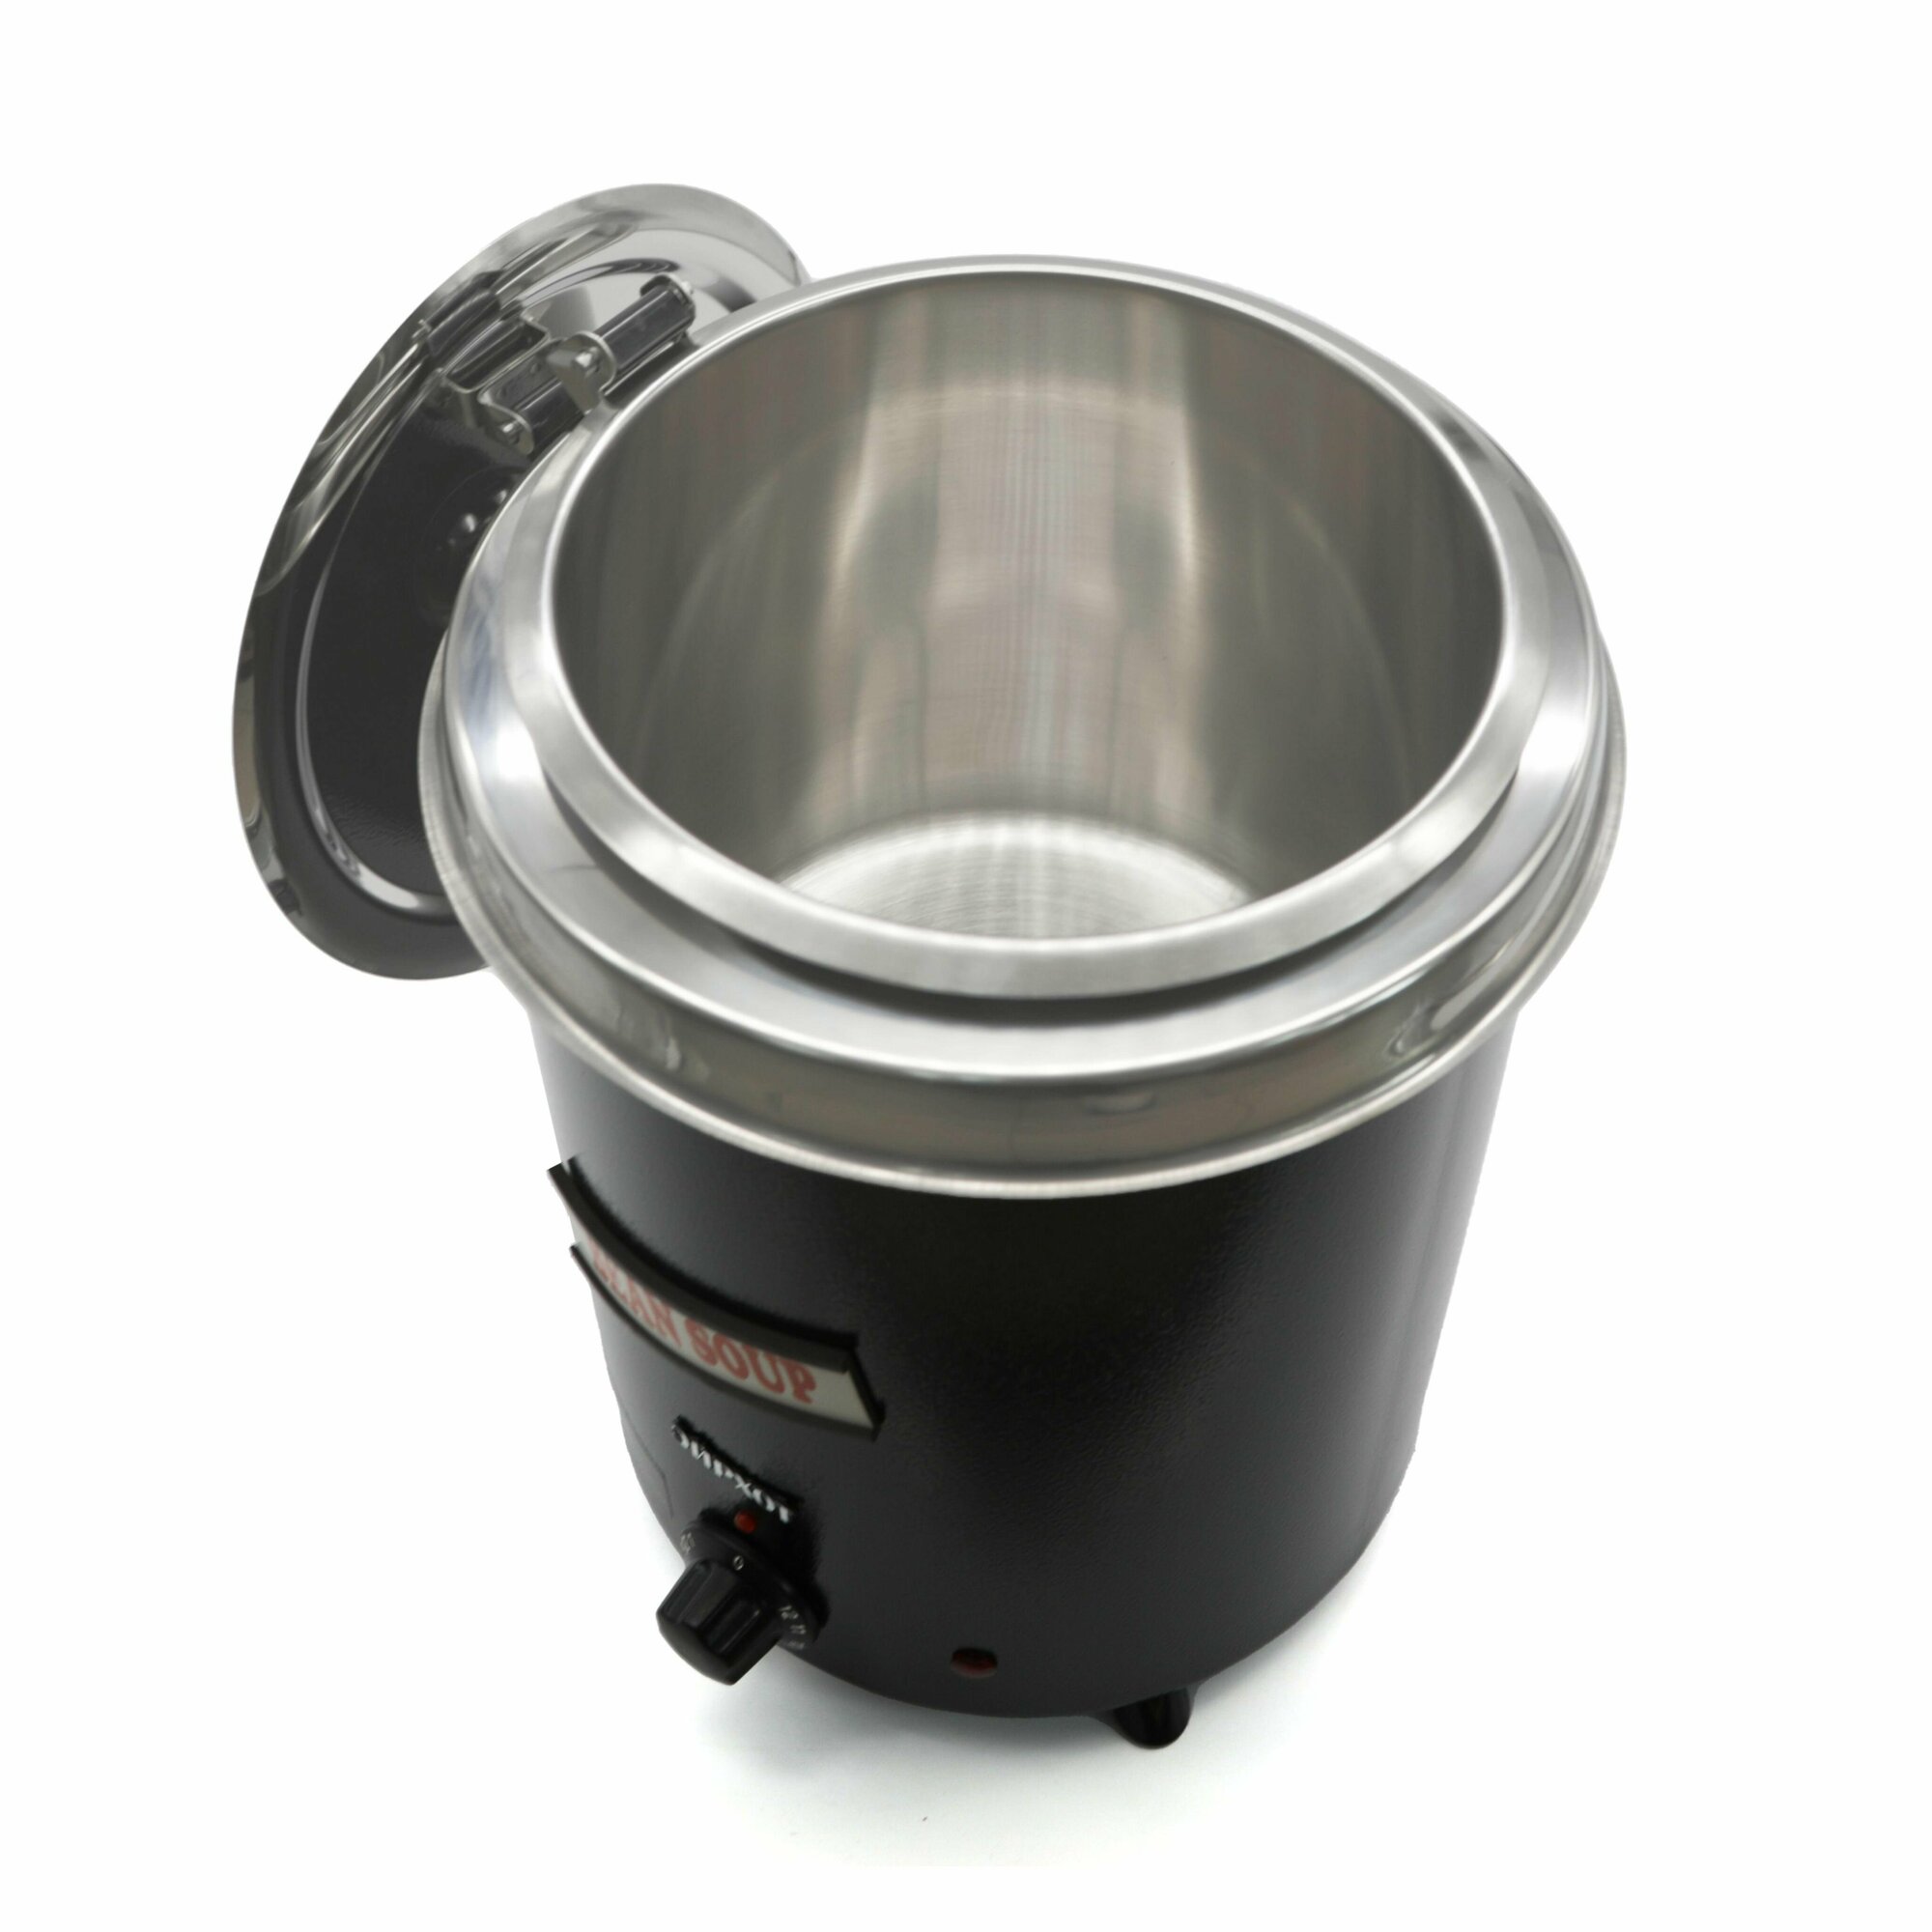 Мармит горшочек для супа AIRHOT SB-5700, 5л, эмалированная сталь, терморегулятор